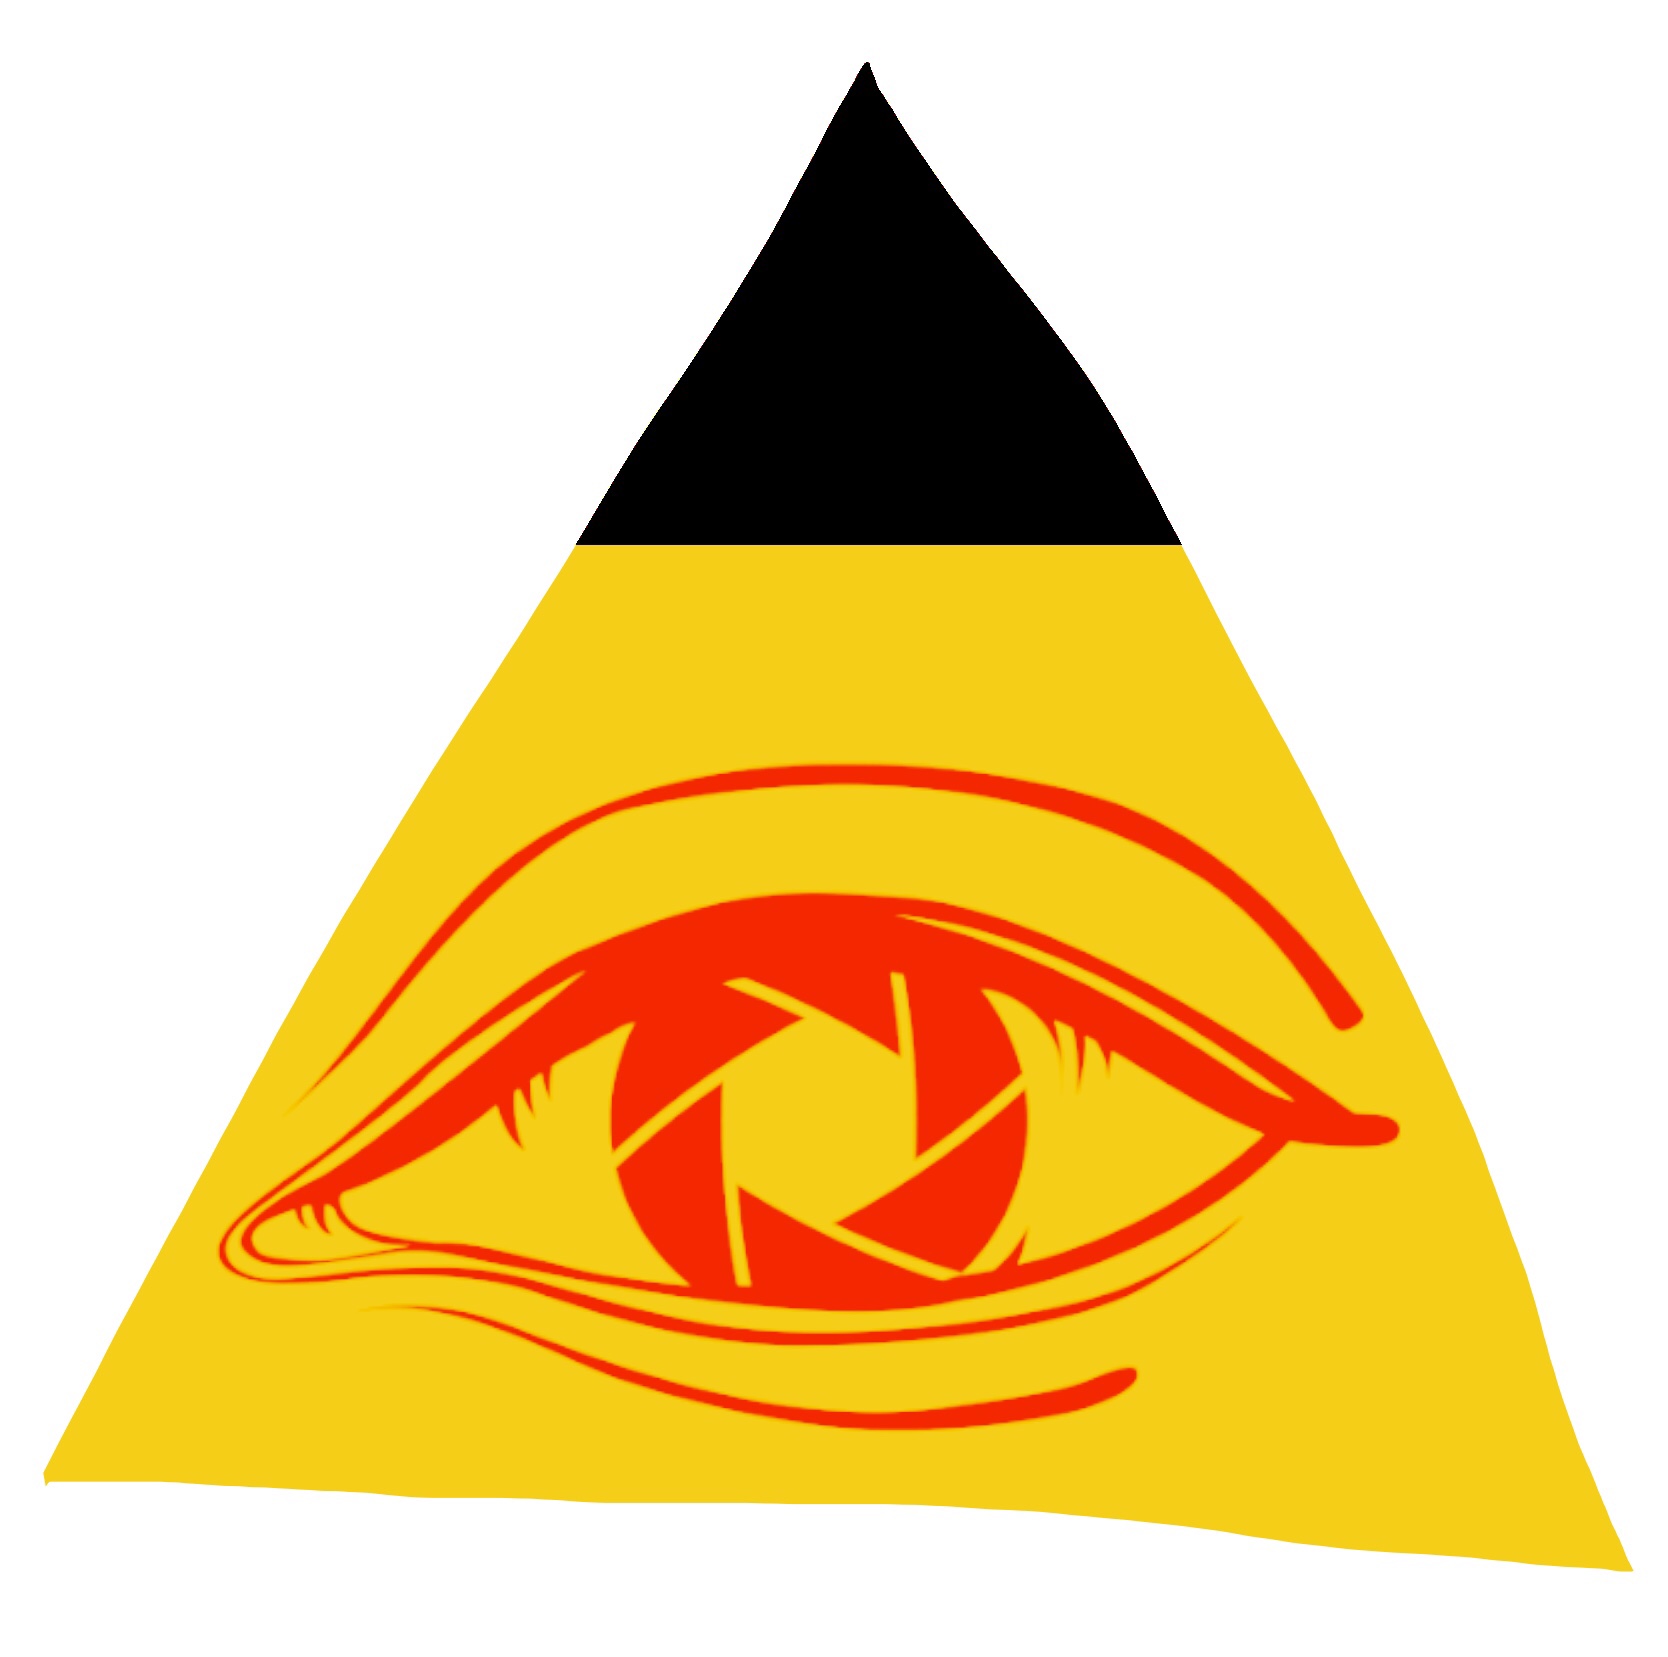 Exposure triangle haptic illuminati